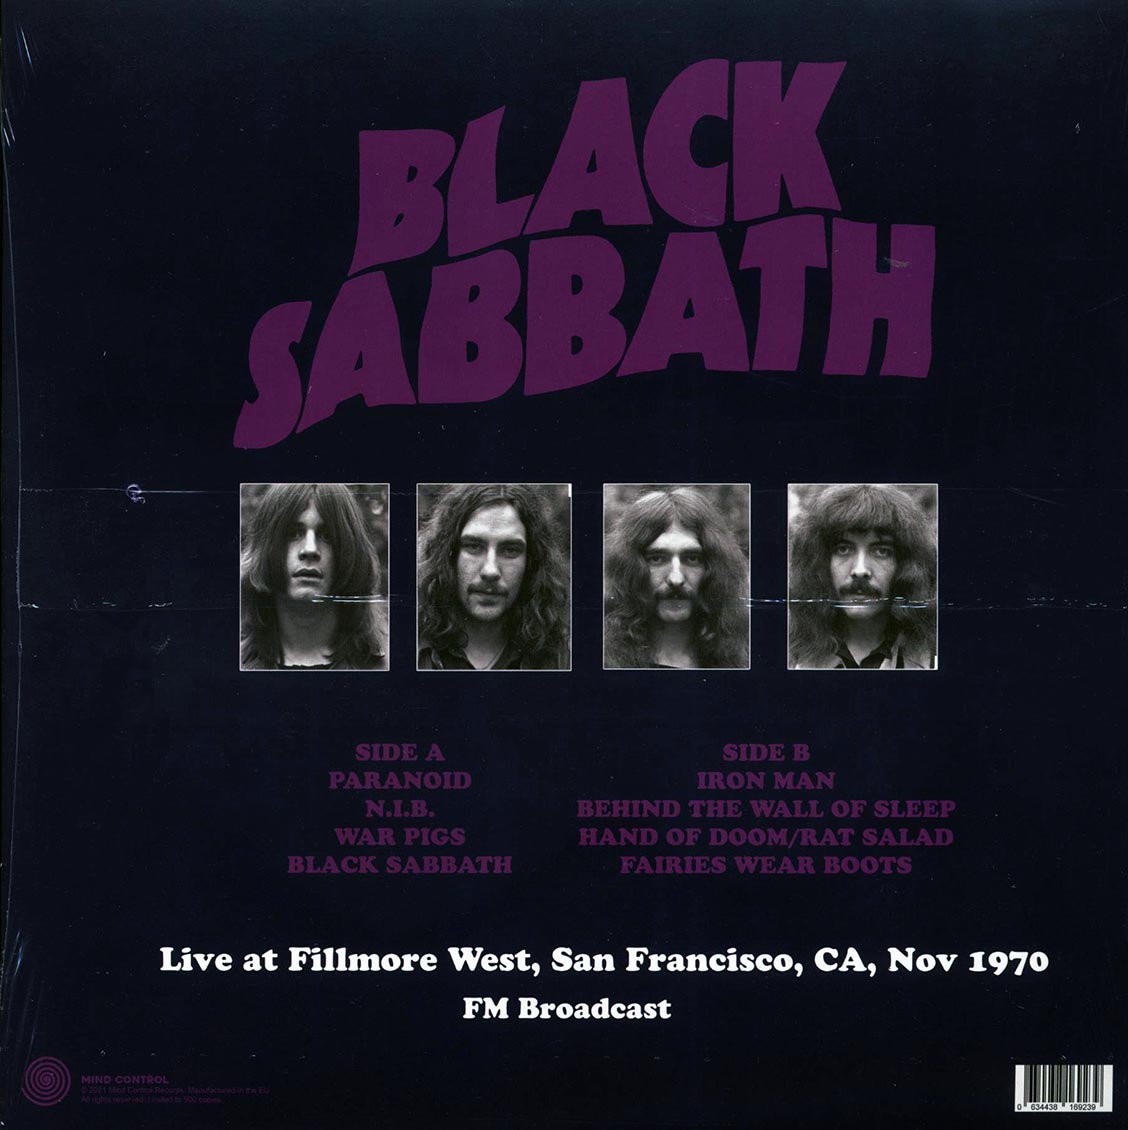 Black Sabbath - Live At Fillmore West, San Francisco, CA, Nov 1970 FM Broadcast - Vinyl LP, LP